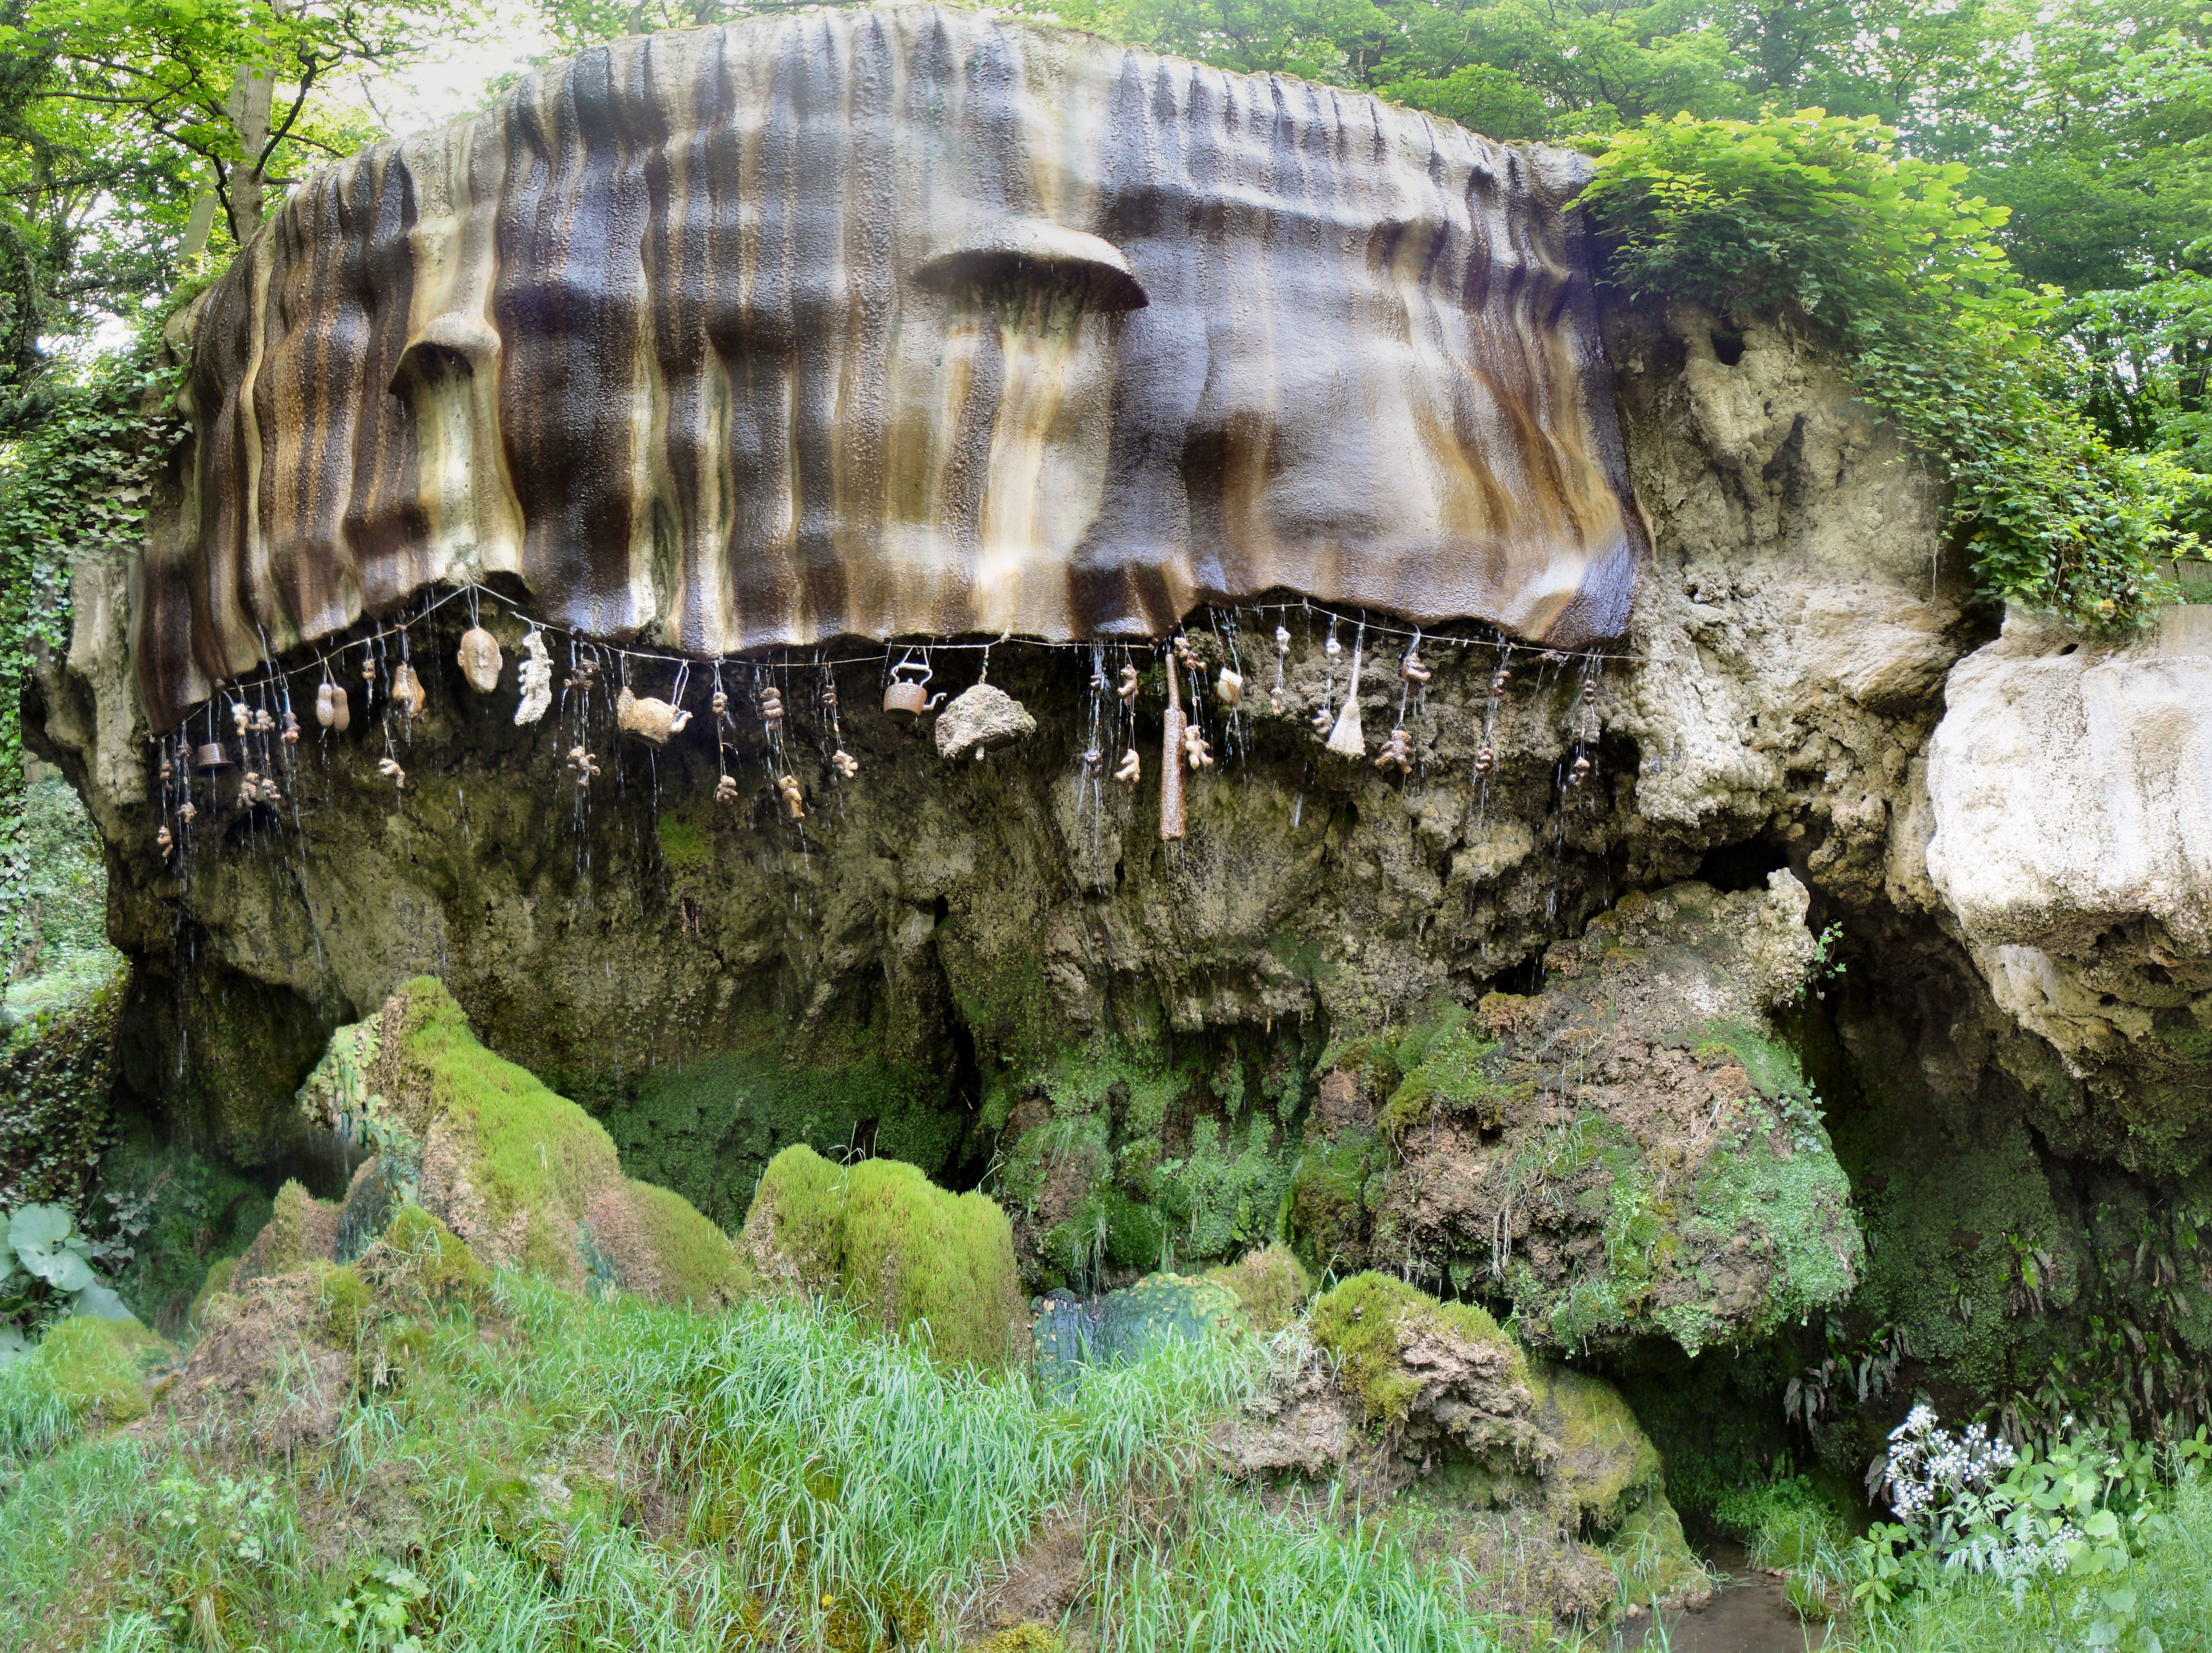 Stone placing. Пещера матушки Шиптон. Окаменелый колодец в Северном Йоркшире в Англии.. Окаменелый колодец Англия. Пещера матушки Шиптон Англия.